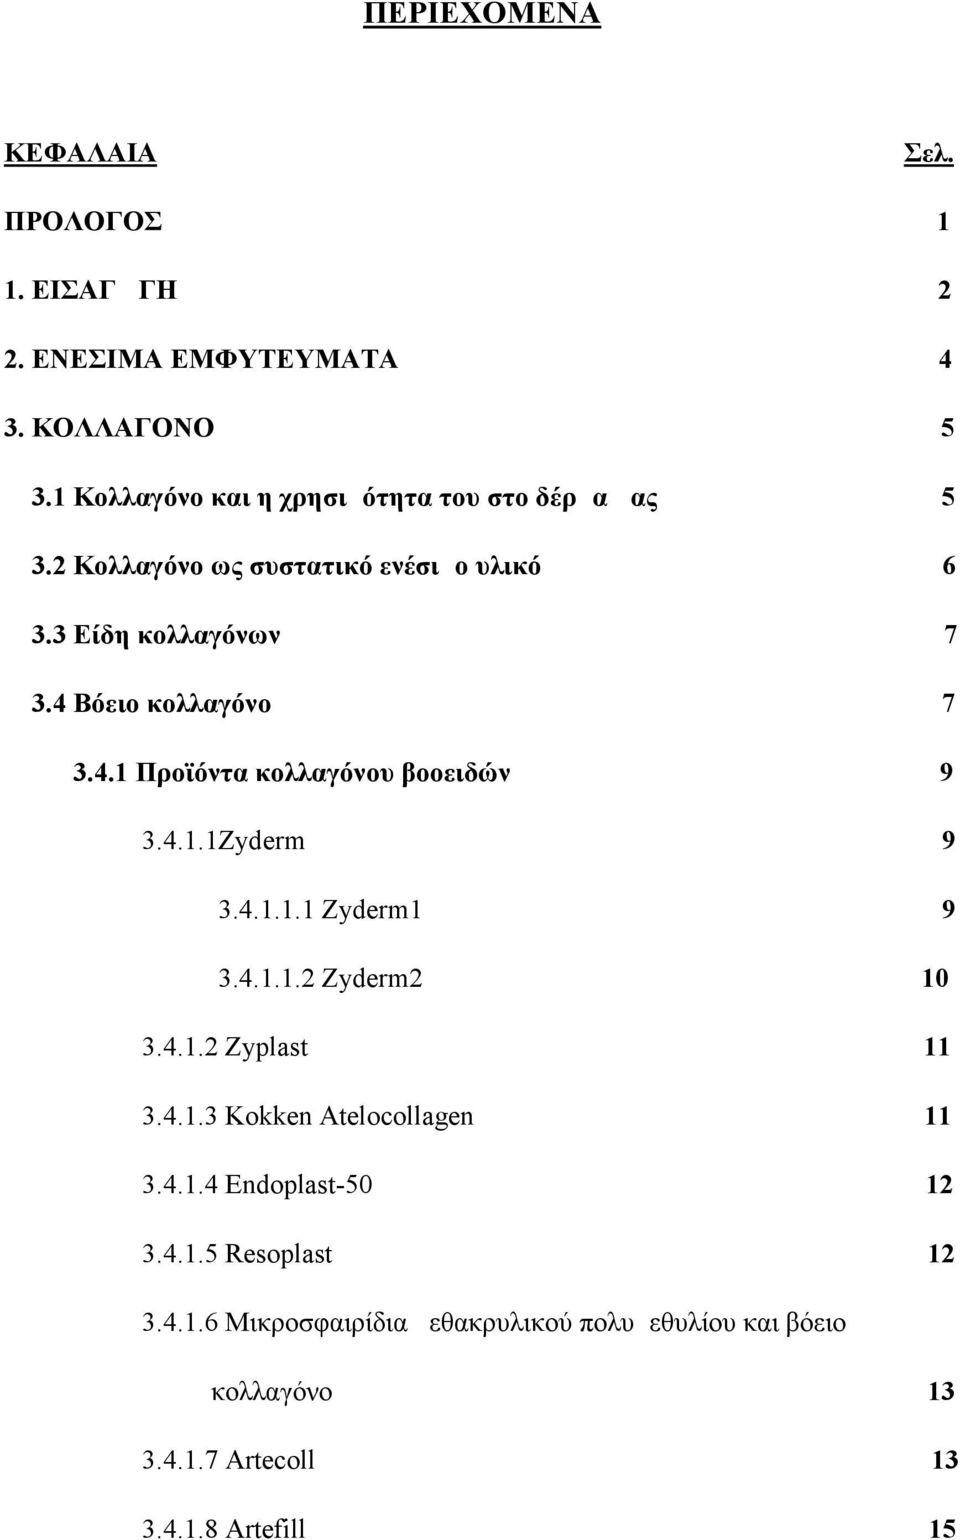 4 Βόειο κολλαγόνο 7 3.4.1 Προϊόντα κολλαγόνου βοοειδών 9 3.4.1.1Zyderm 9 3.4.1.1.1 Zyderm1 9 3.4.1.1.2 Zyderm2 10 3.4.1.2 Zyplast 11 3.